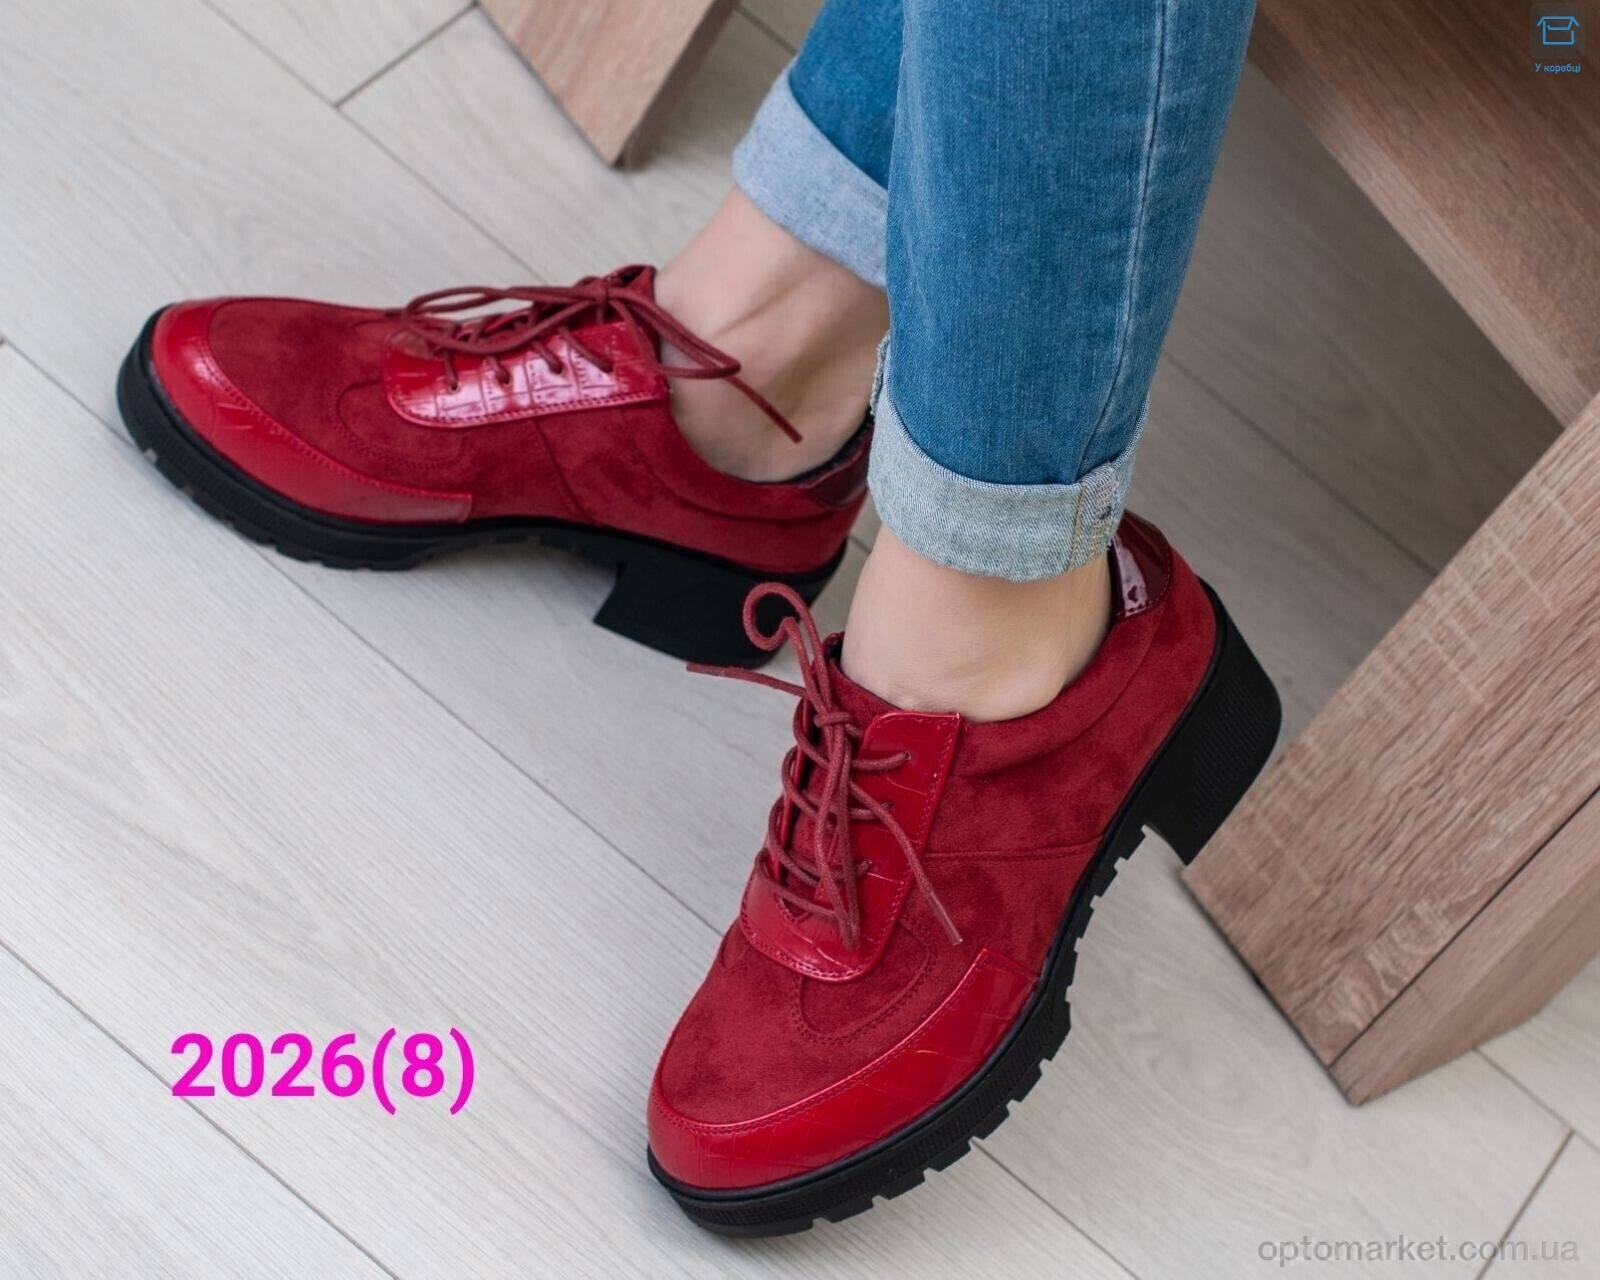 Купить Туфлі жіночі 2026 red Gollmony червоний, фото 2